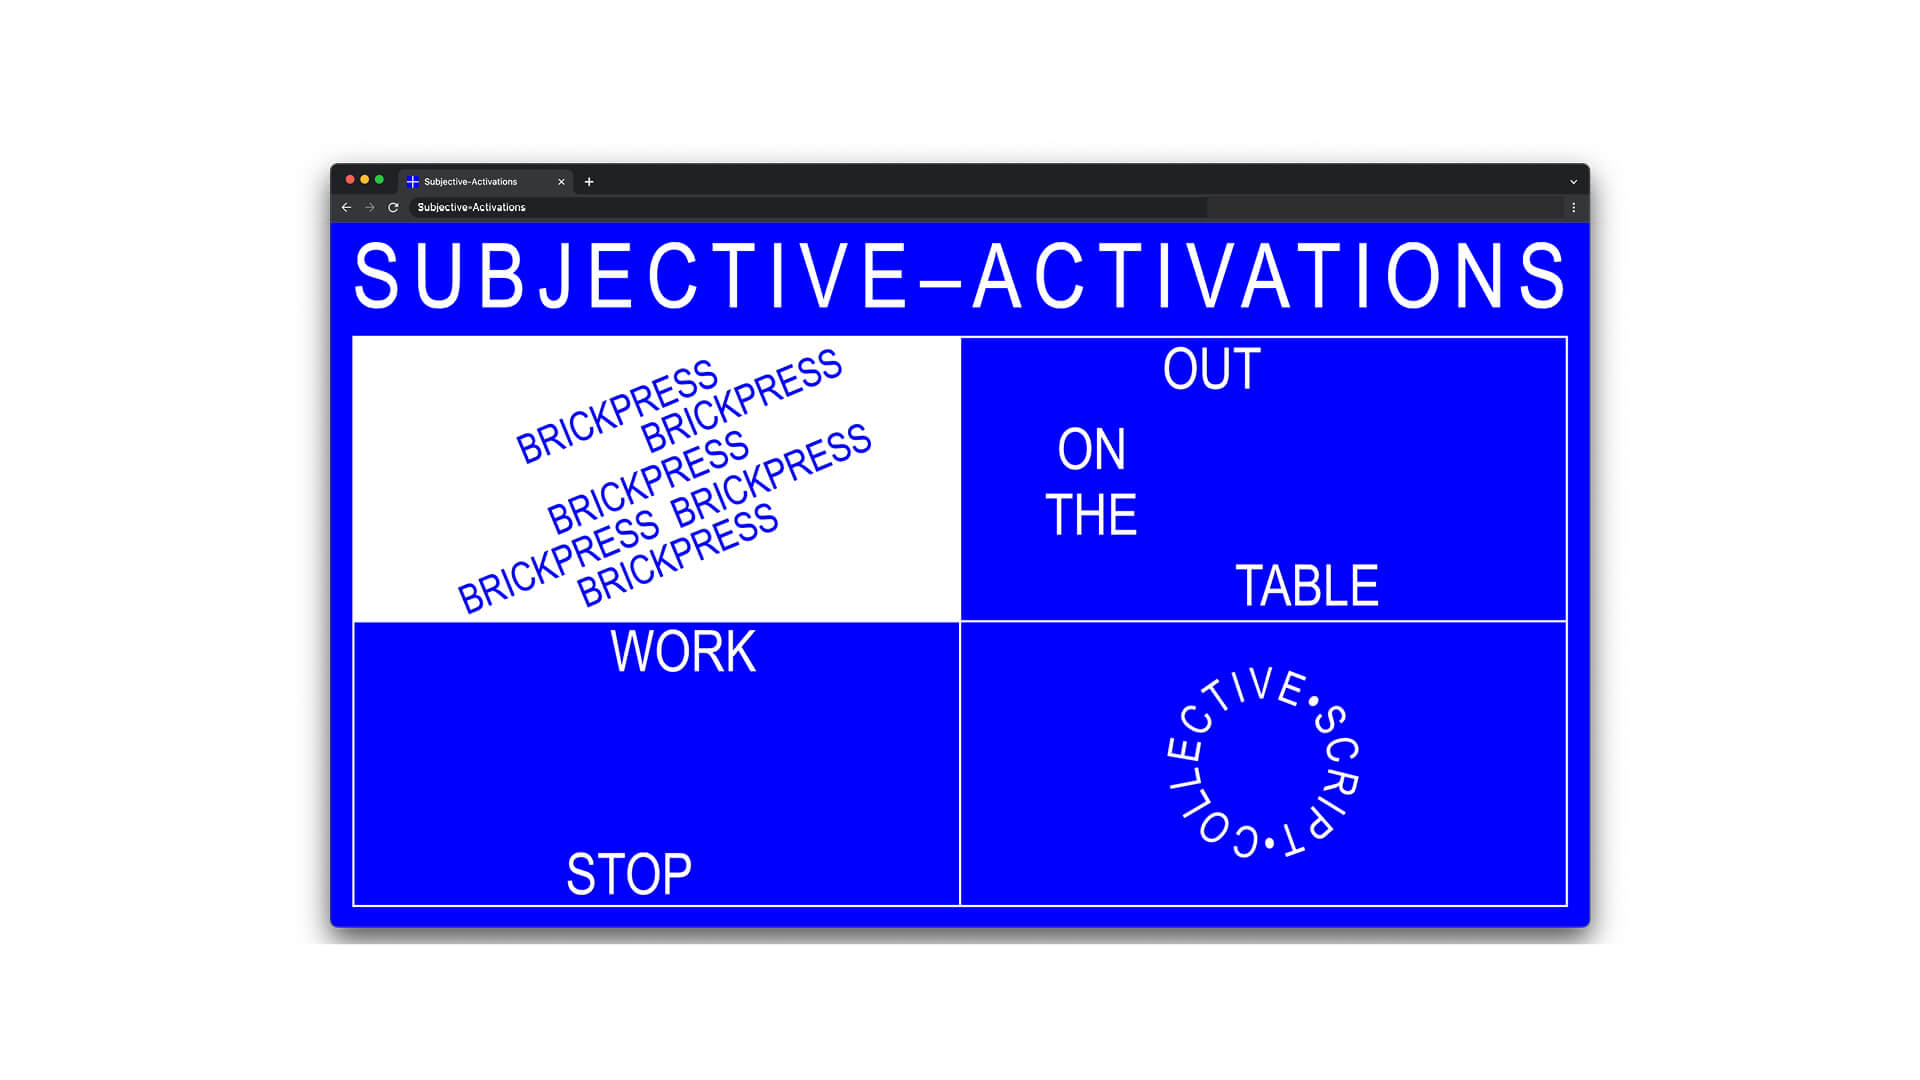 La home del sito Subjective Activation con hover attivo sulla finestra del laboratorio Brickpress